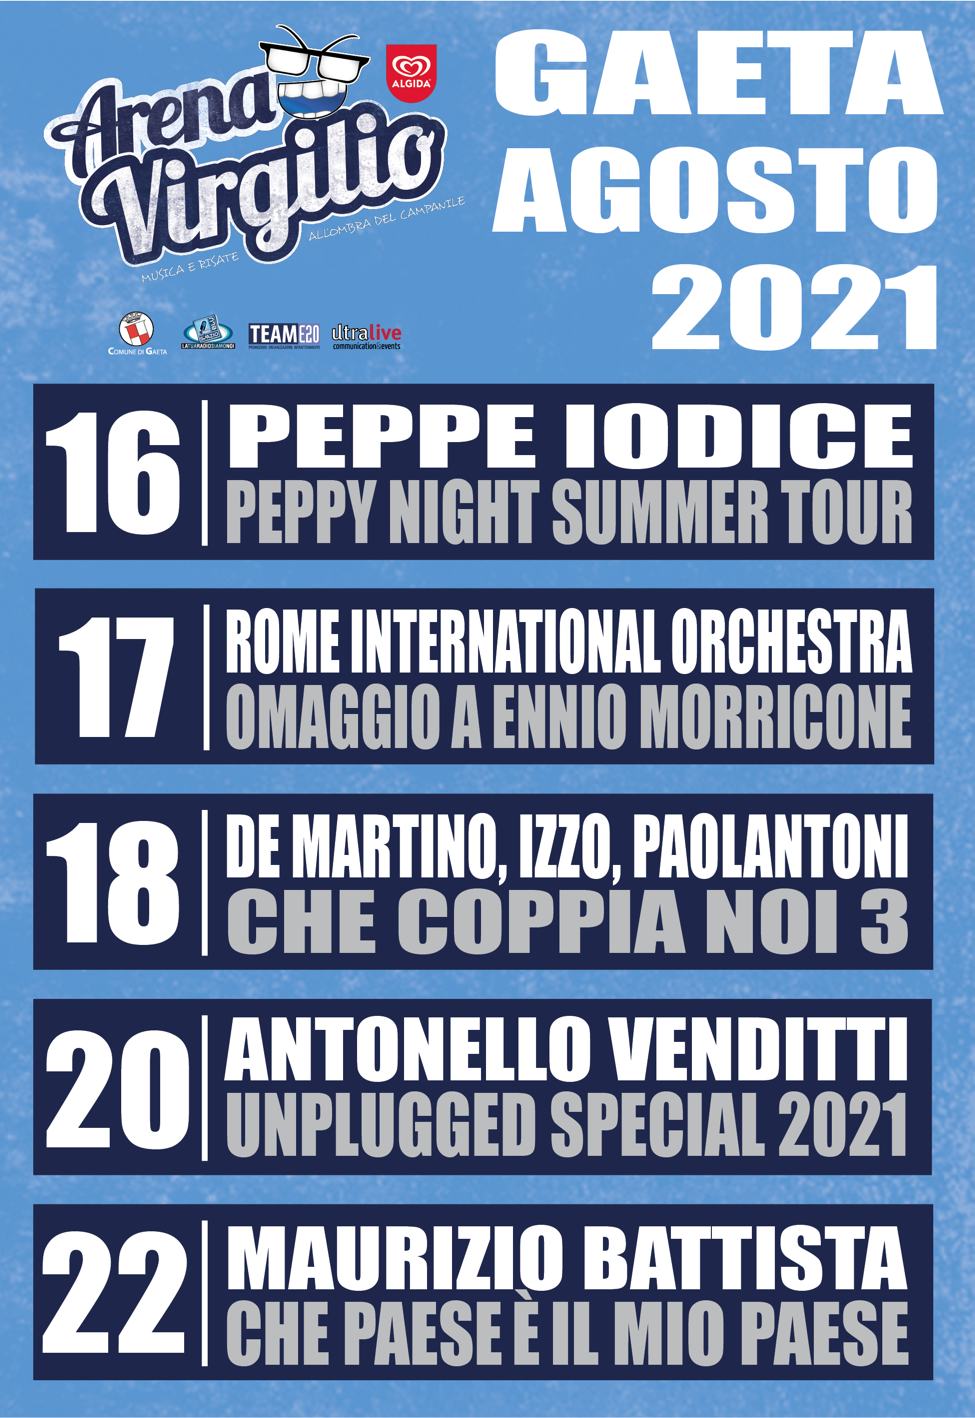  Arena Virgilio 2021: Antonello Venditti, Maurizio Battista, Peppe Iodice, Stefano De Martino, Biagio Izzo, Francesco Paolantoni, la Rome Internati...